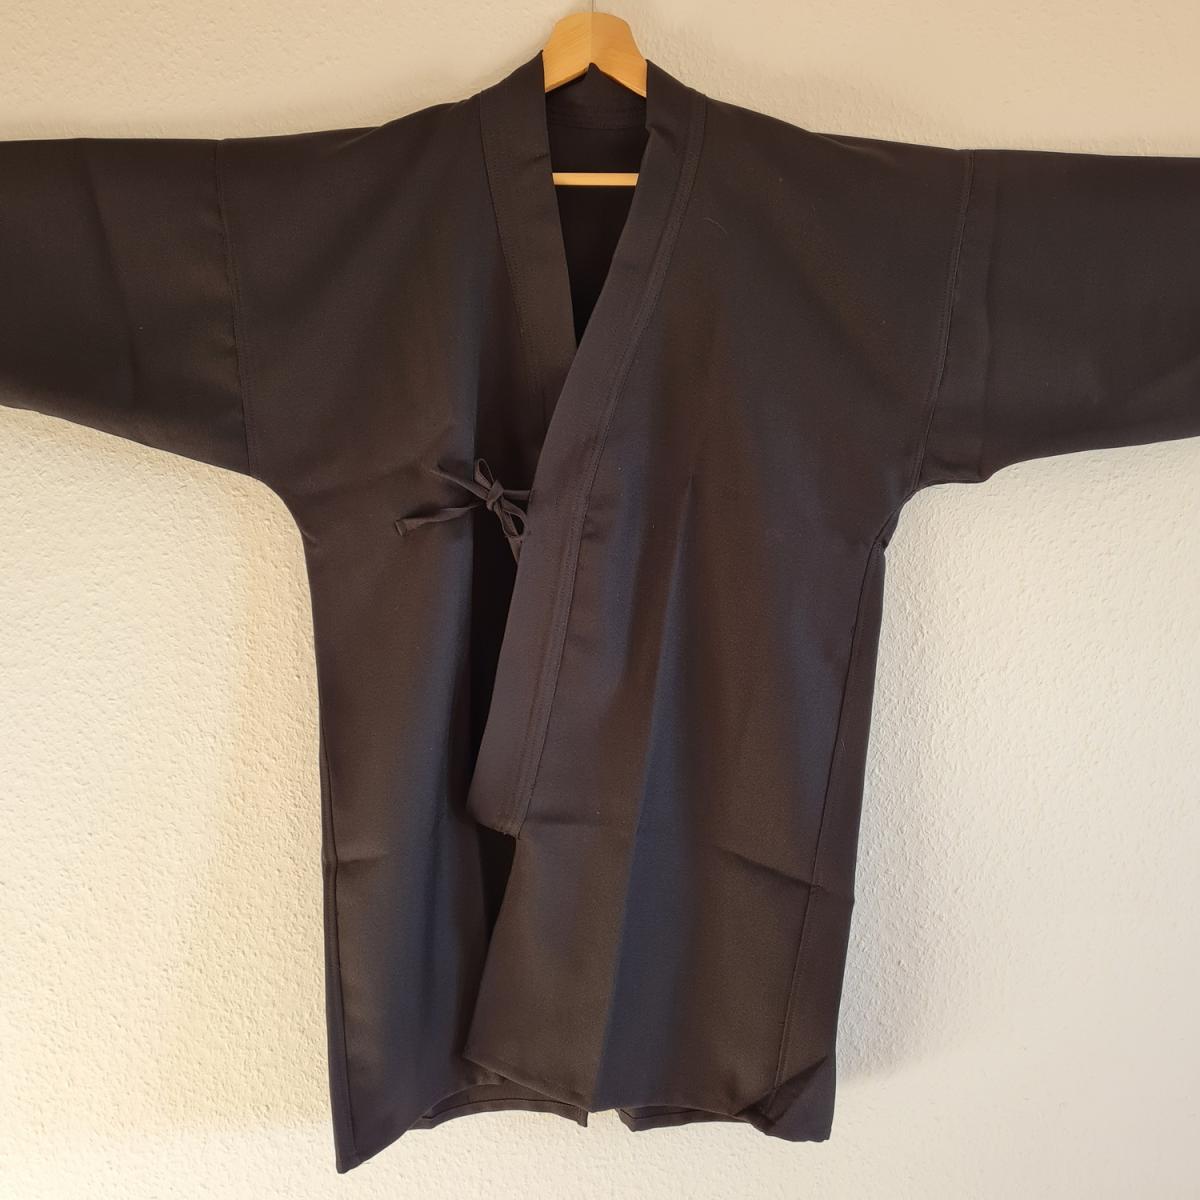 Gi aus Gabardine schwarz - Körpergröße 190 cm ➤www.bokken-shop.de. Passende Bekleidung für Aikido, Iaido, Kendo, Jodo. Dein Budo-Fachhändler!